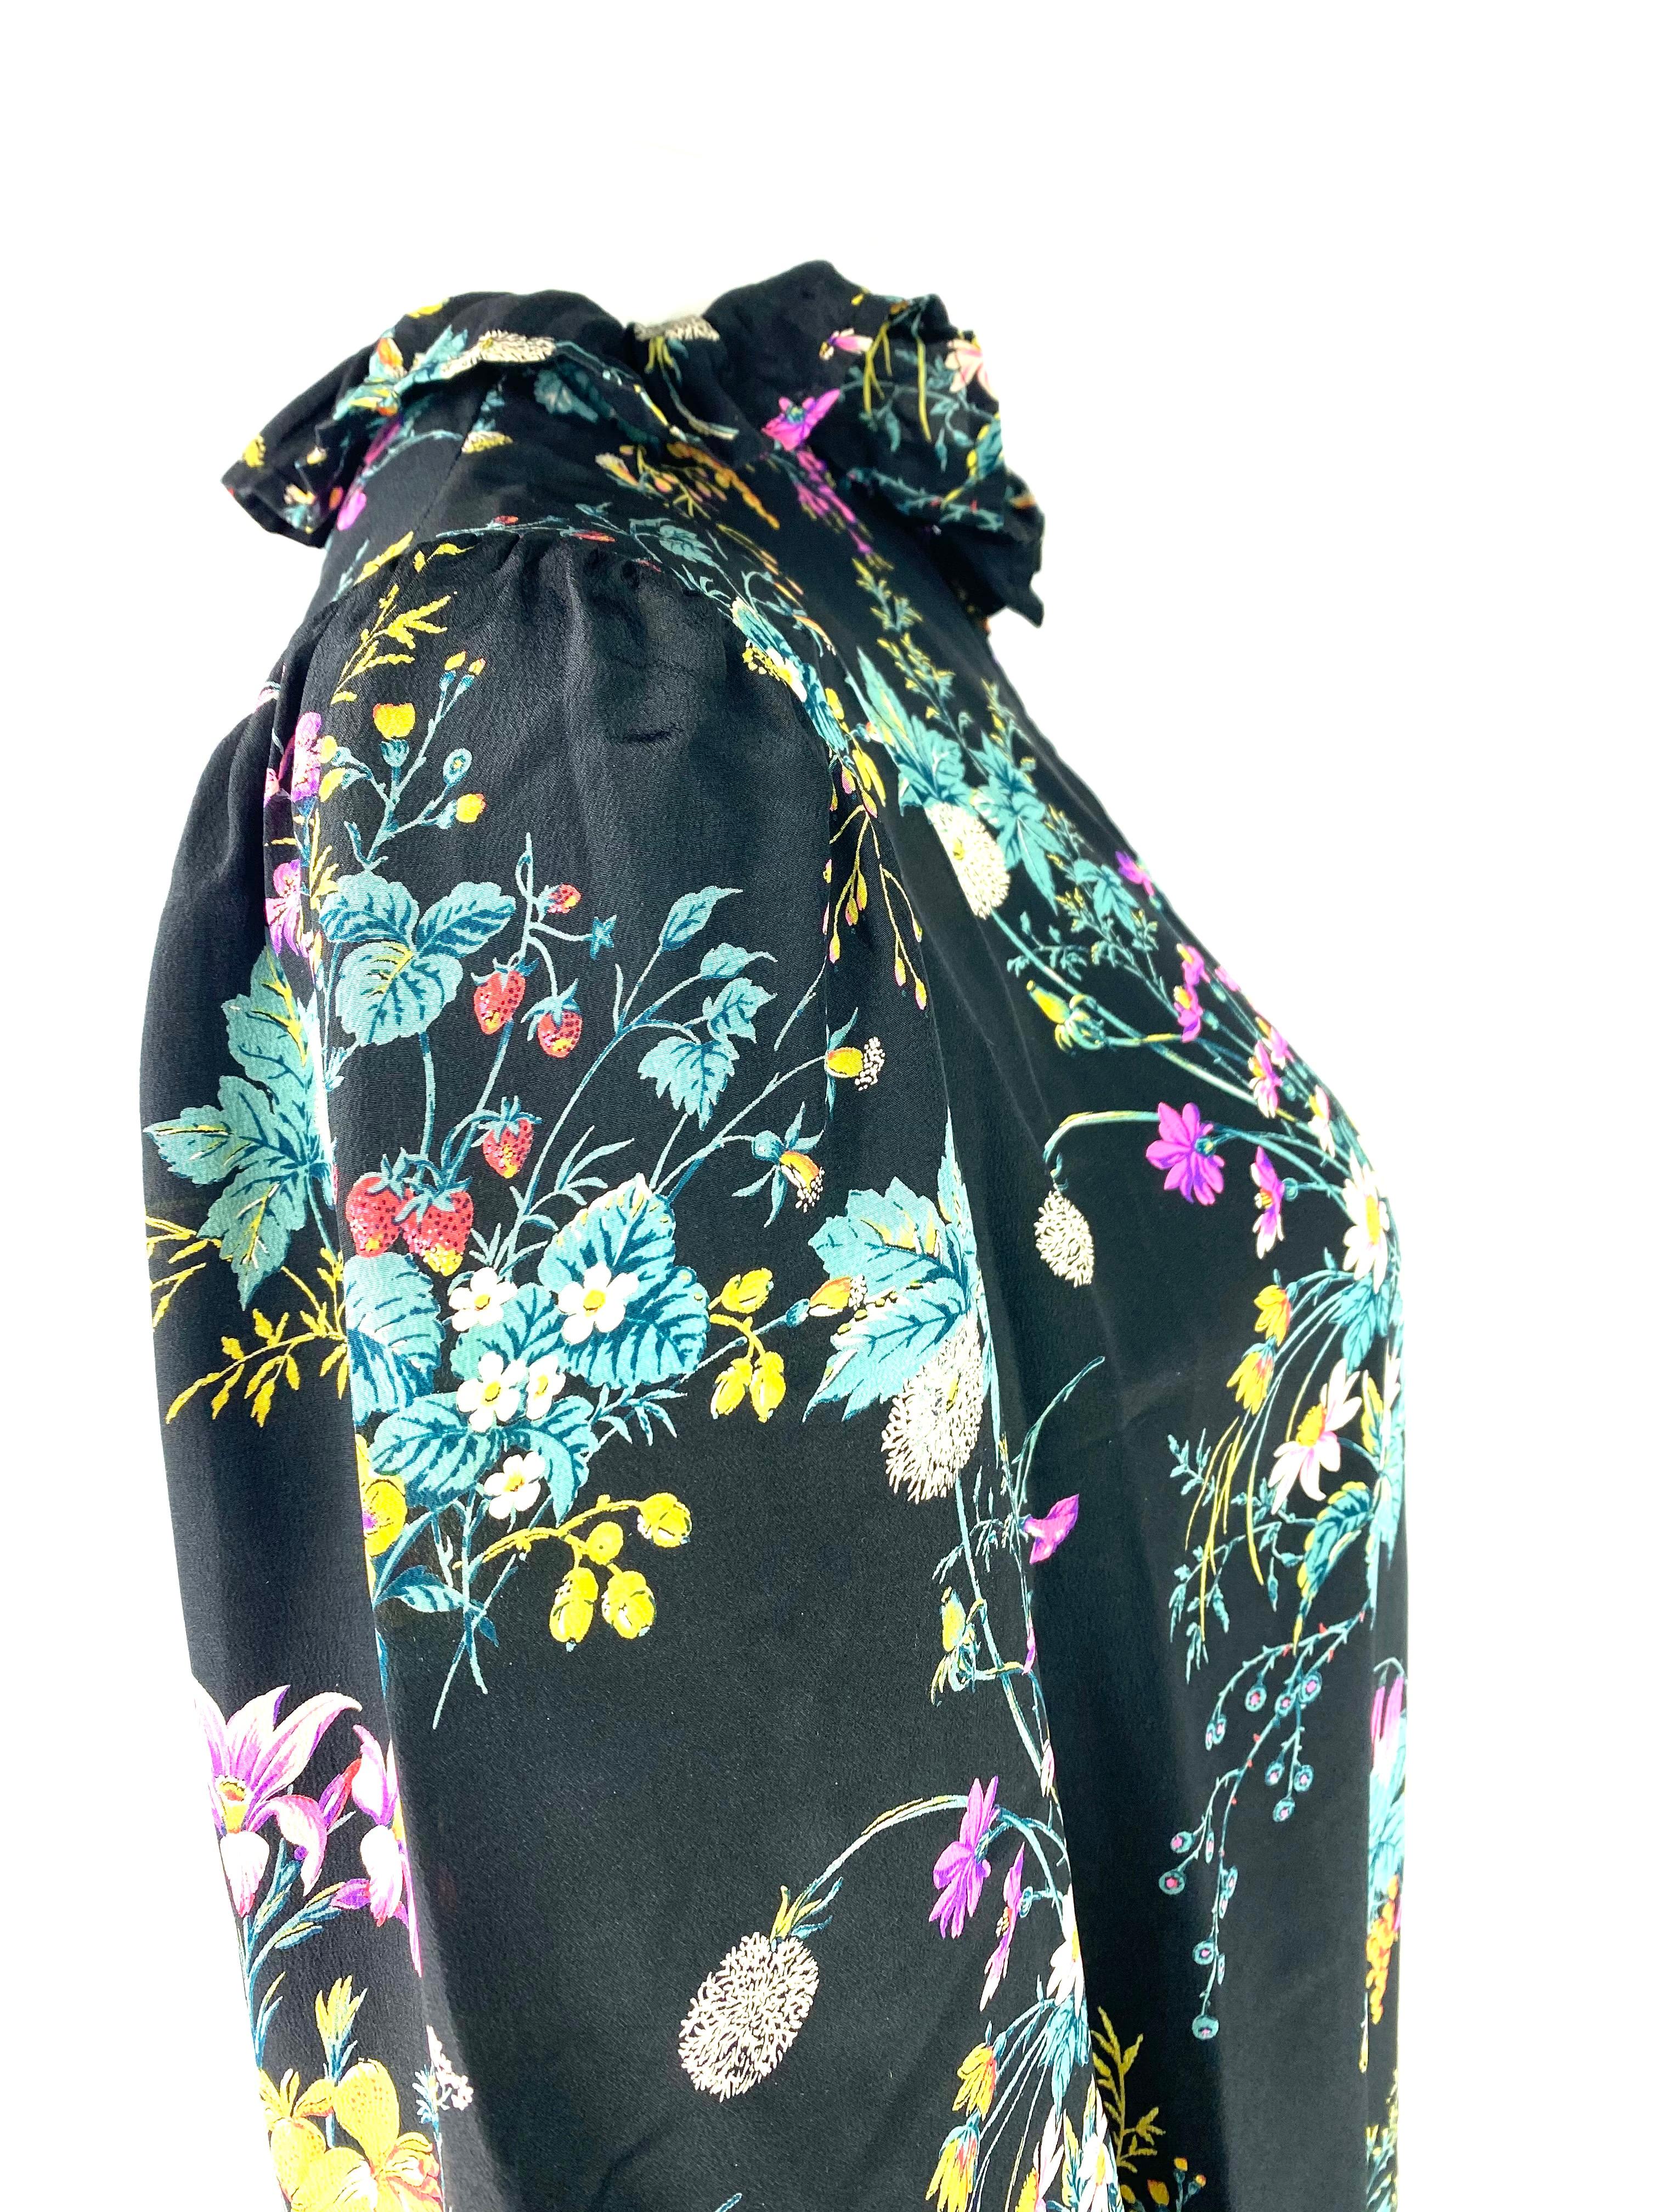 Women's Hanae Mori Paris Black and Multi Colored Silk Mini Dress, Size Small For Sale